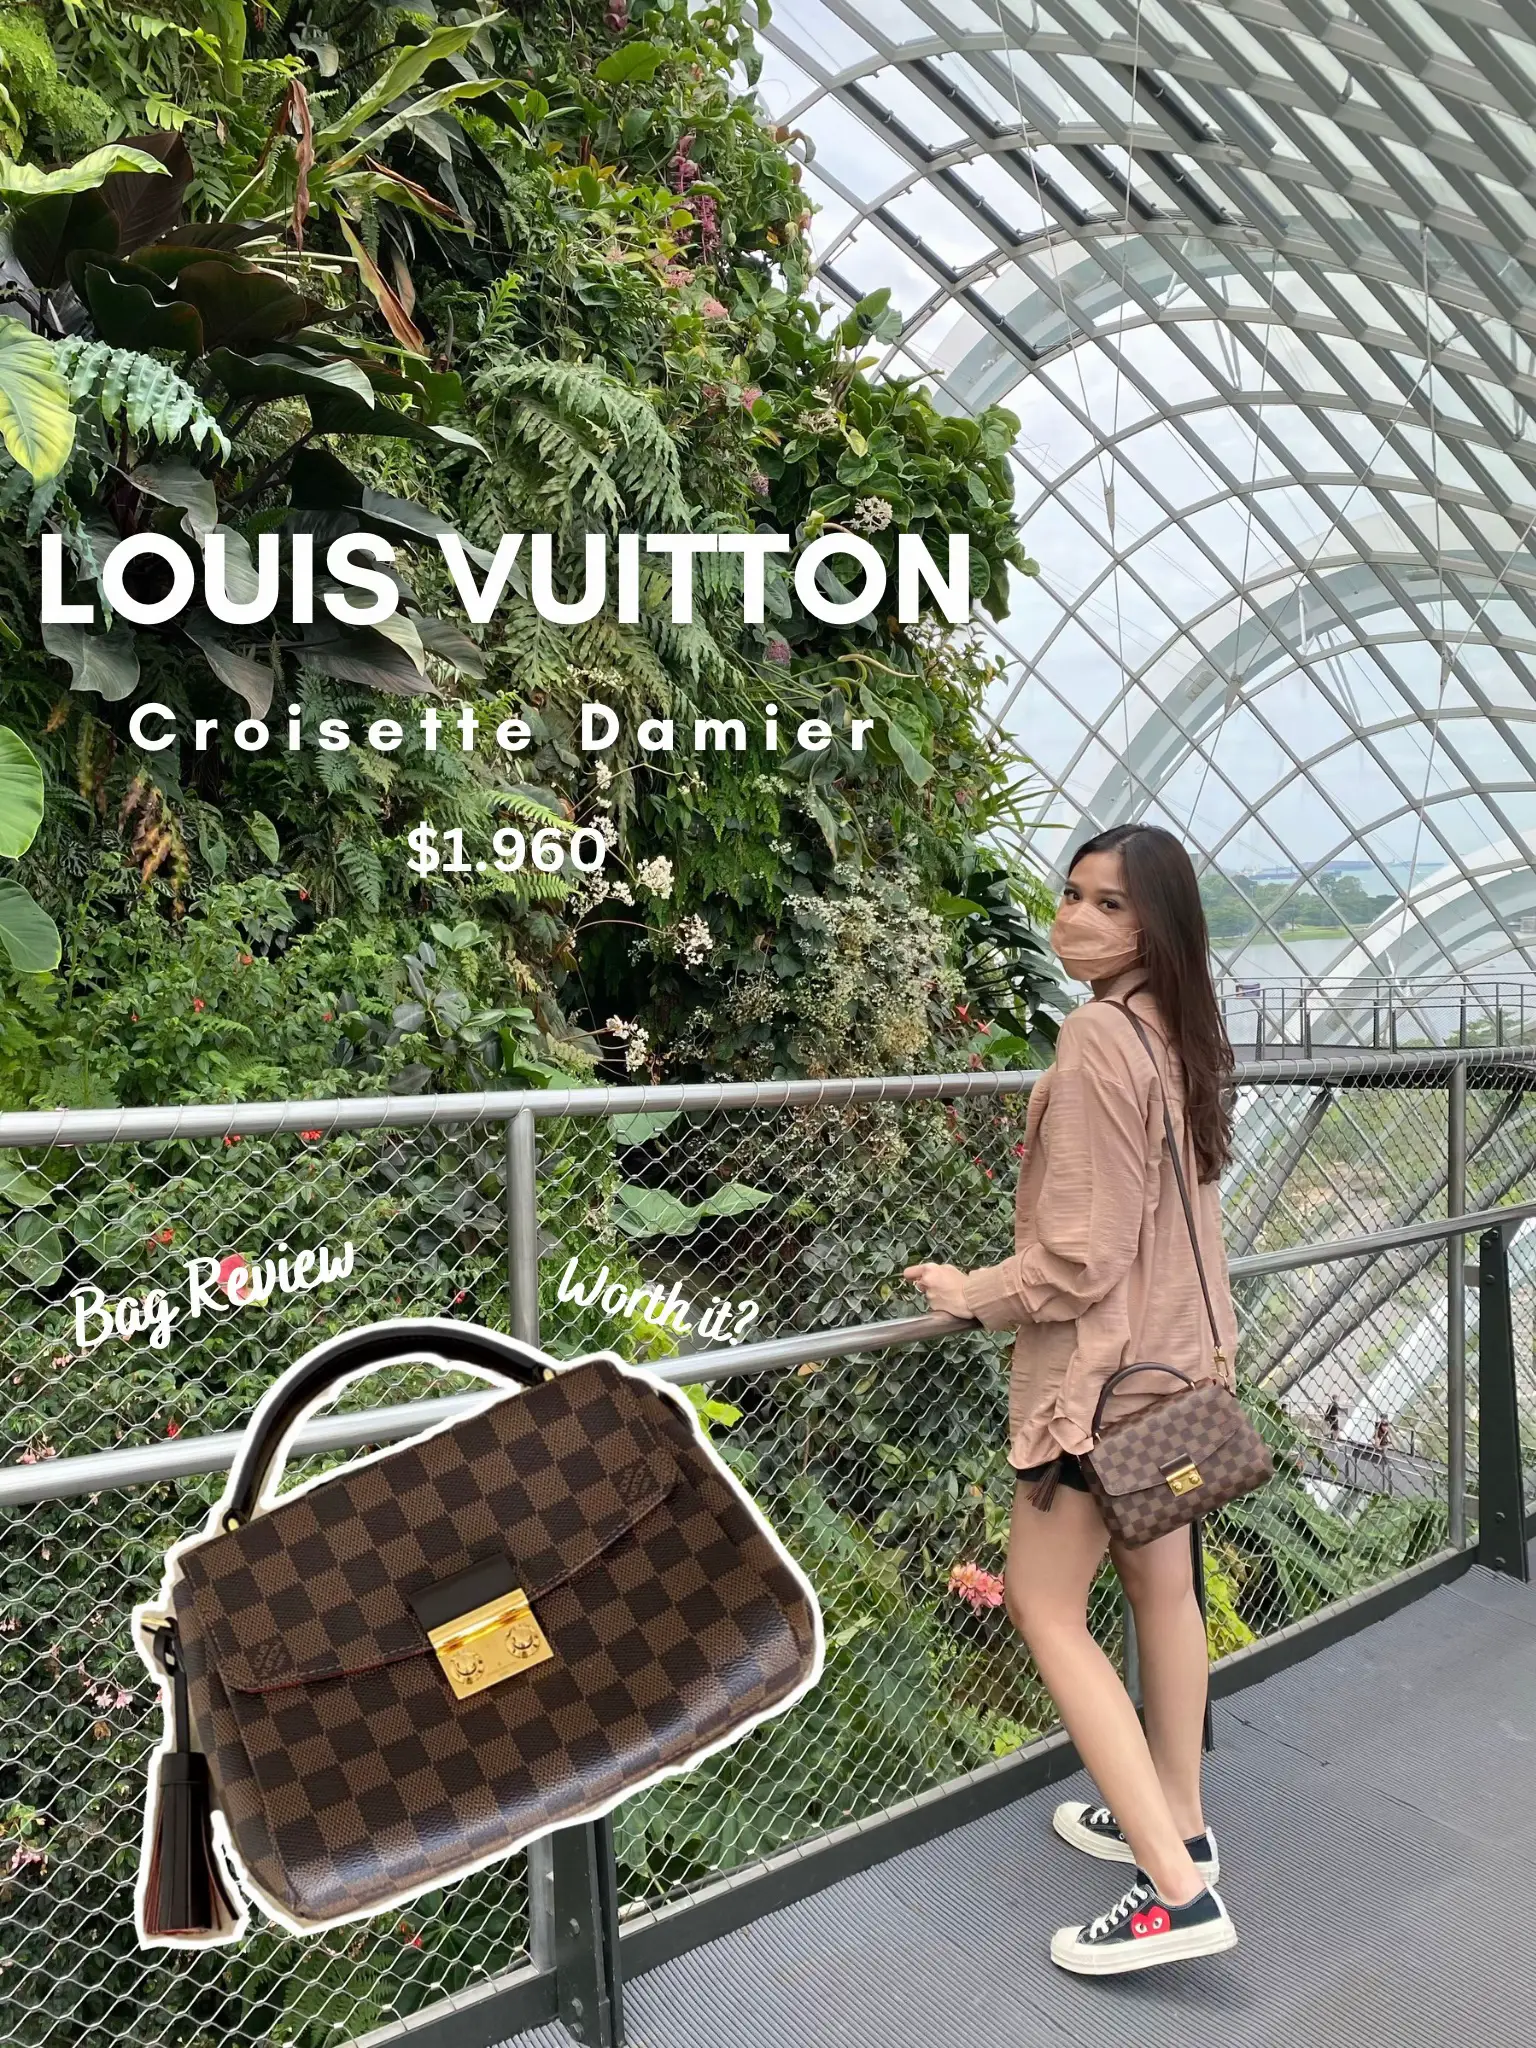 LV Croisette damier bag new